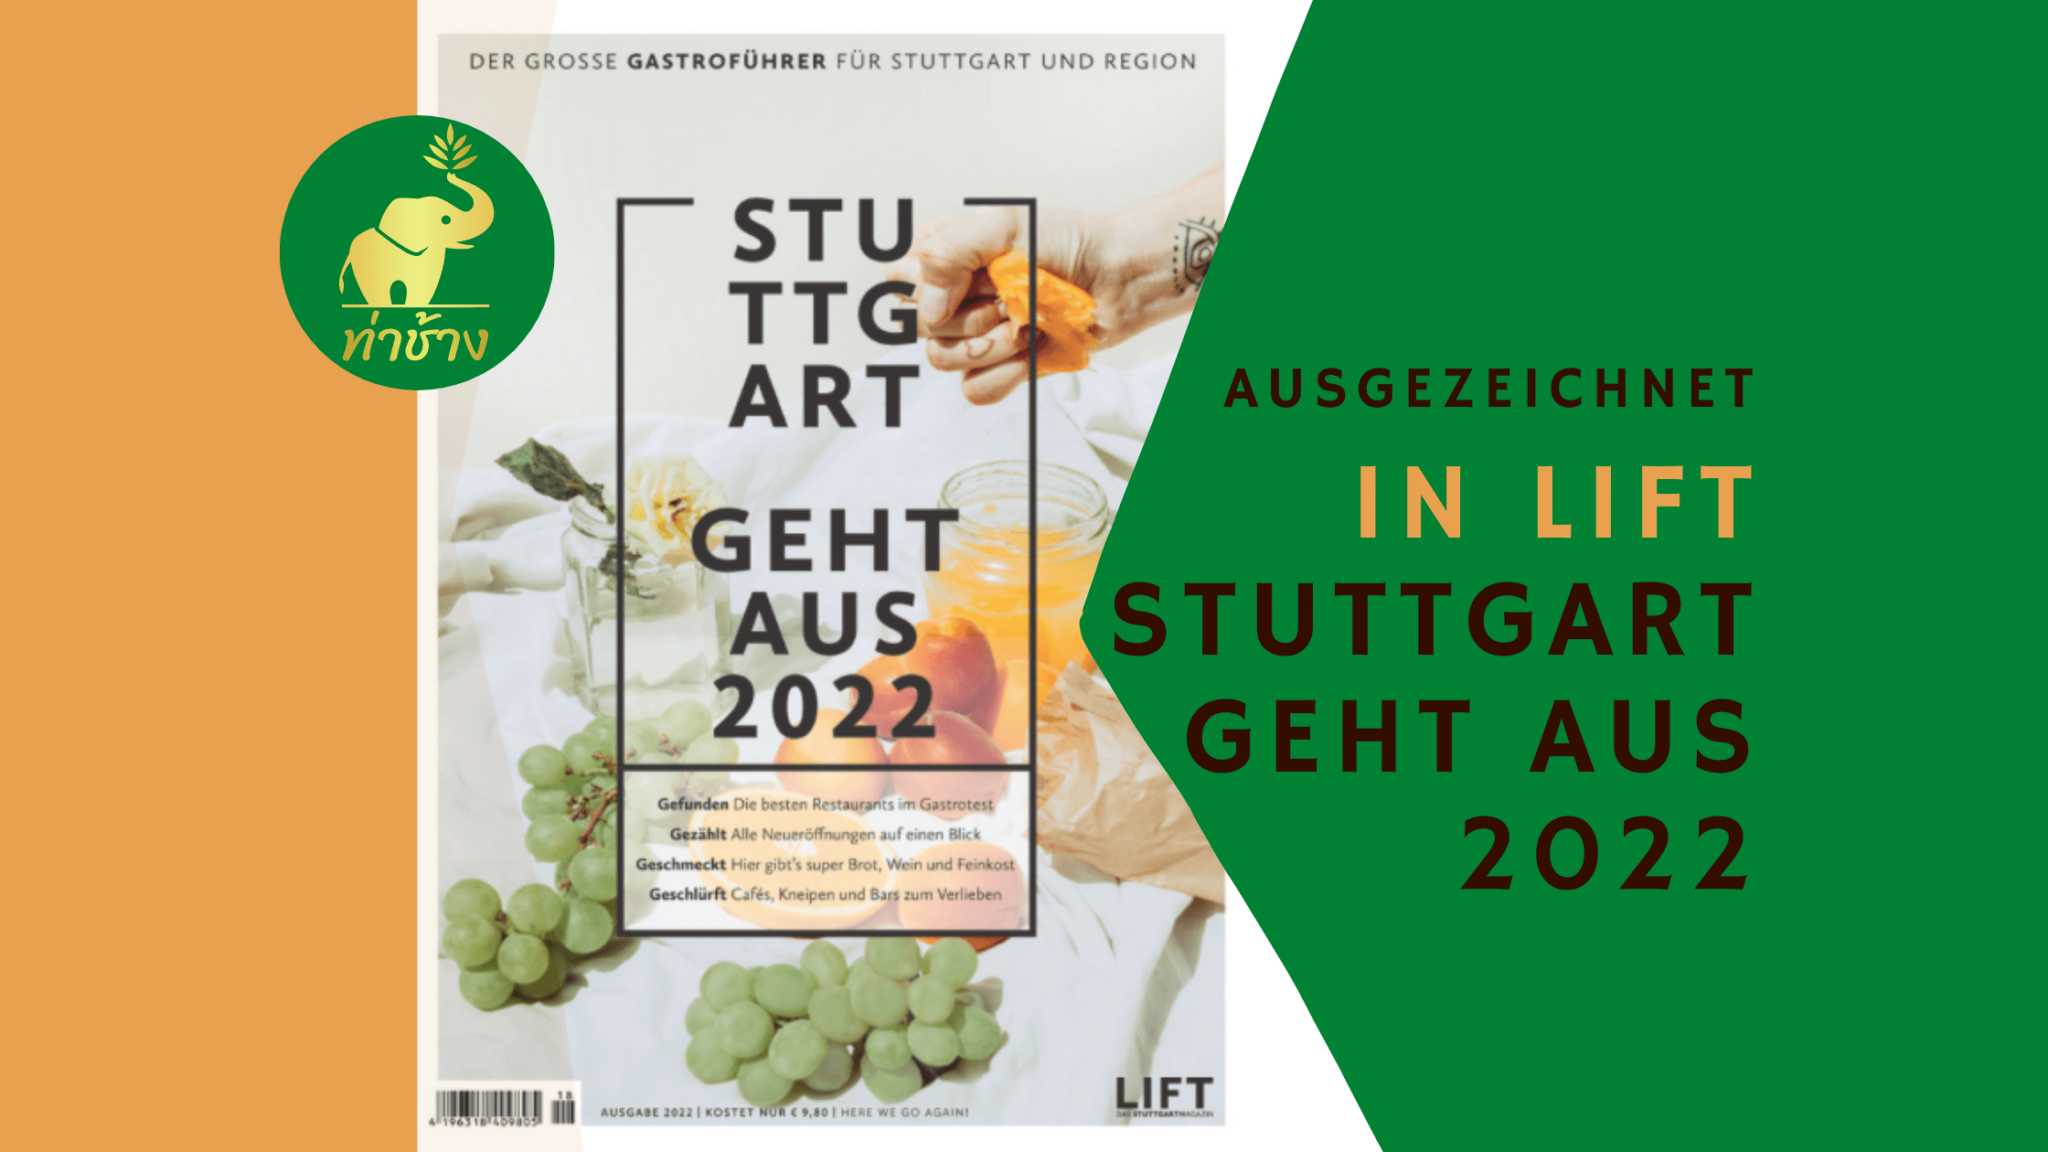 Stuttgart geht aus 2022 Der große Gastroführer für Stuttgart und Region 